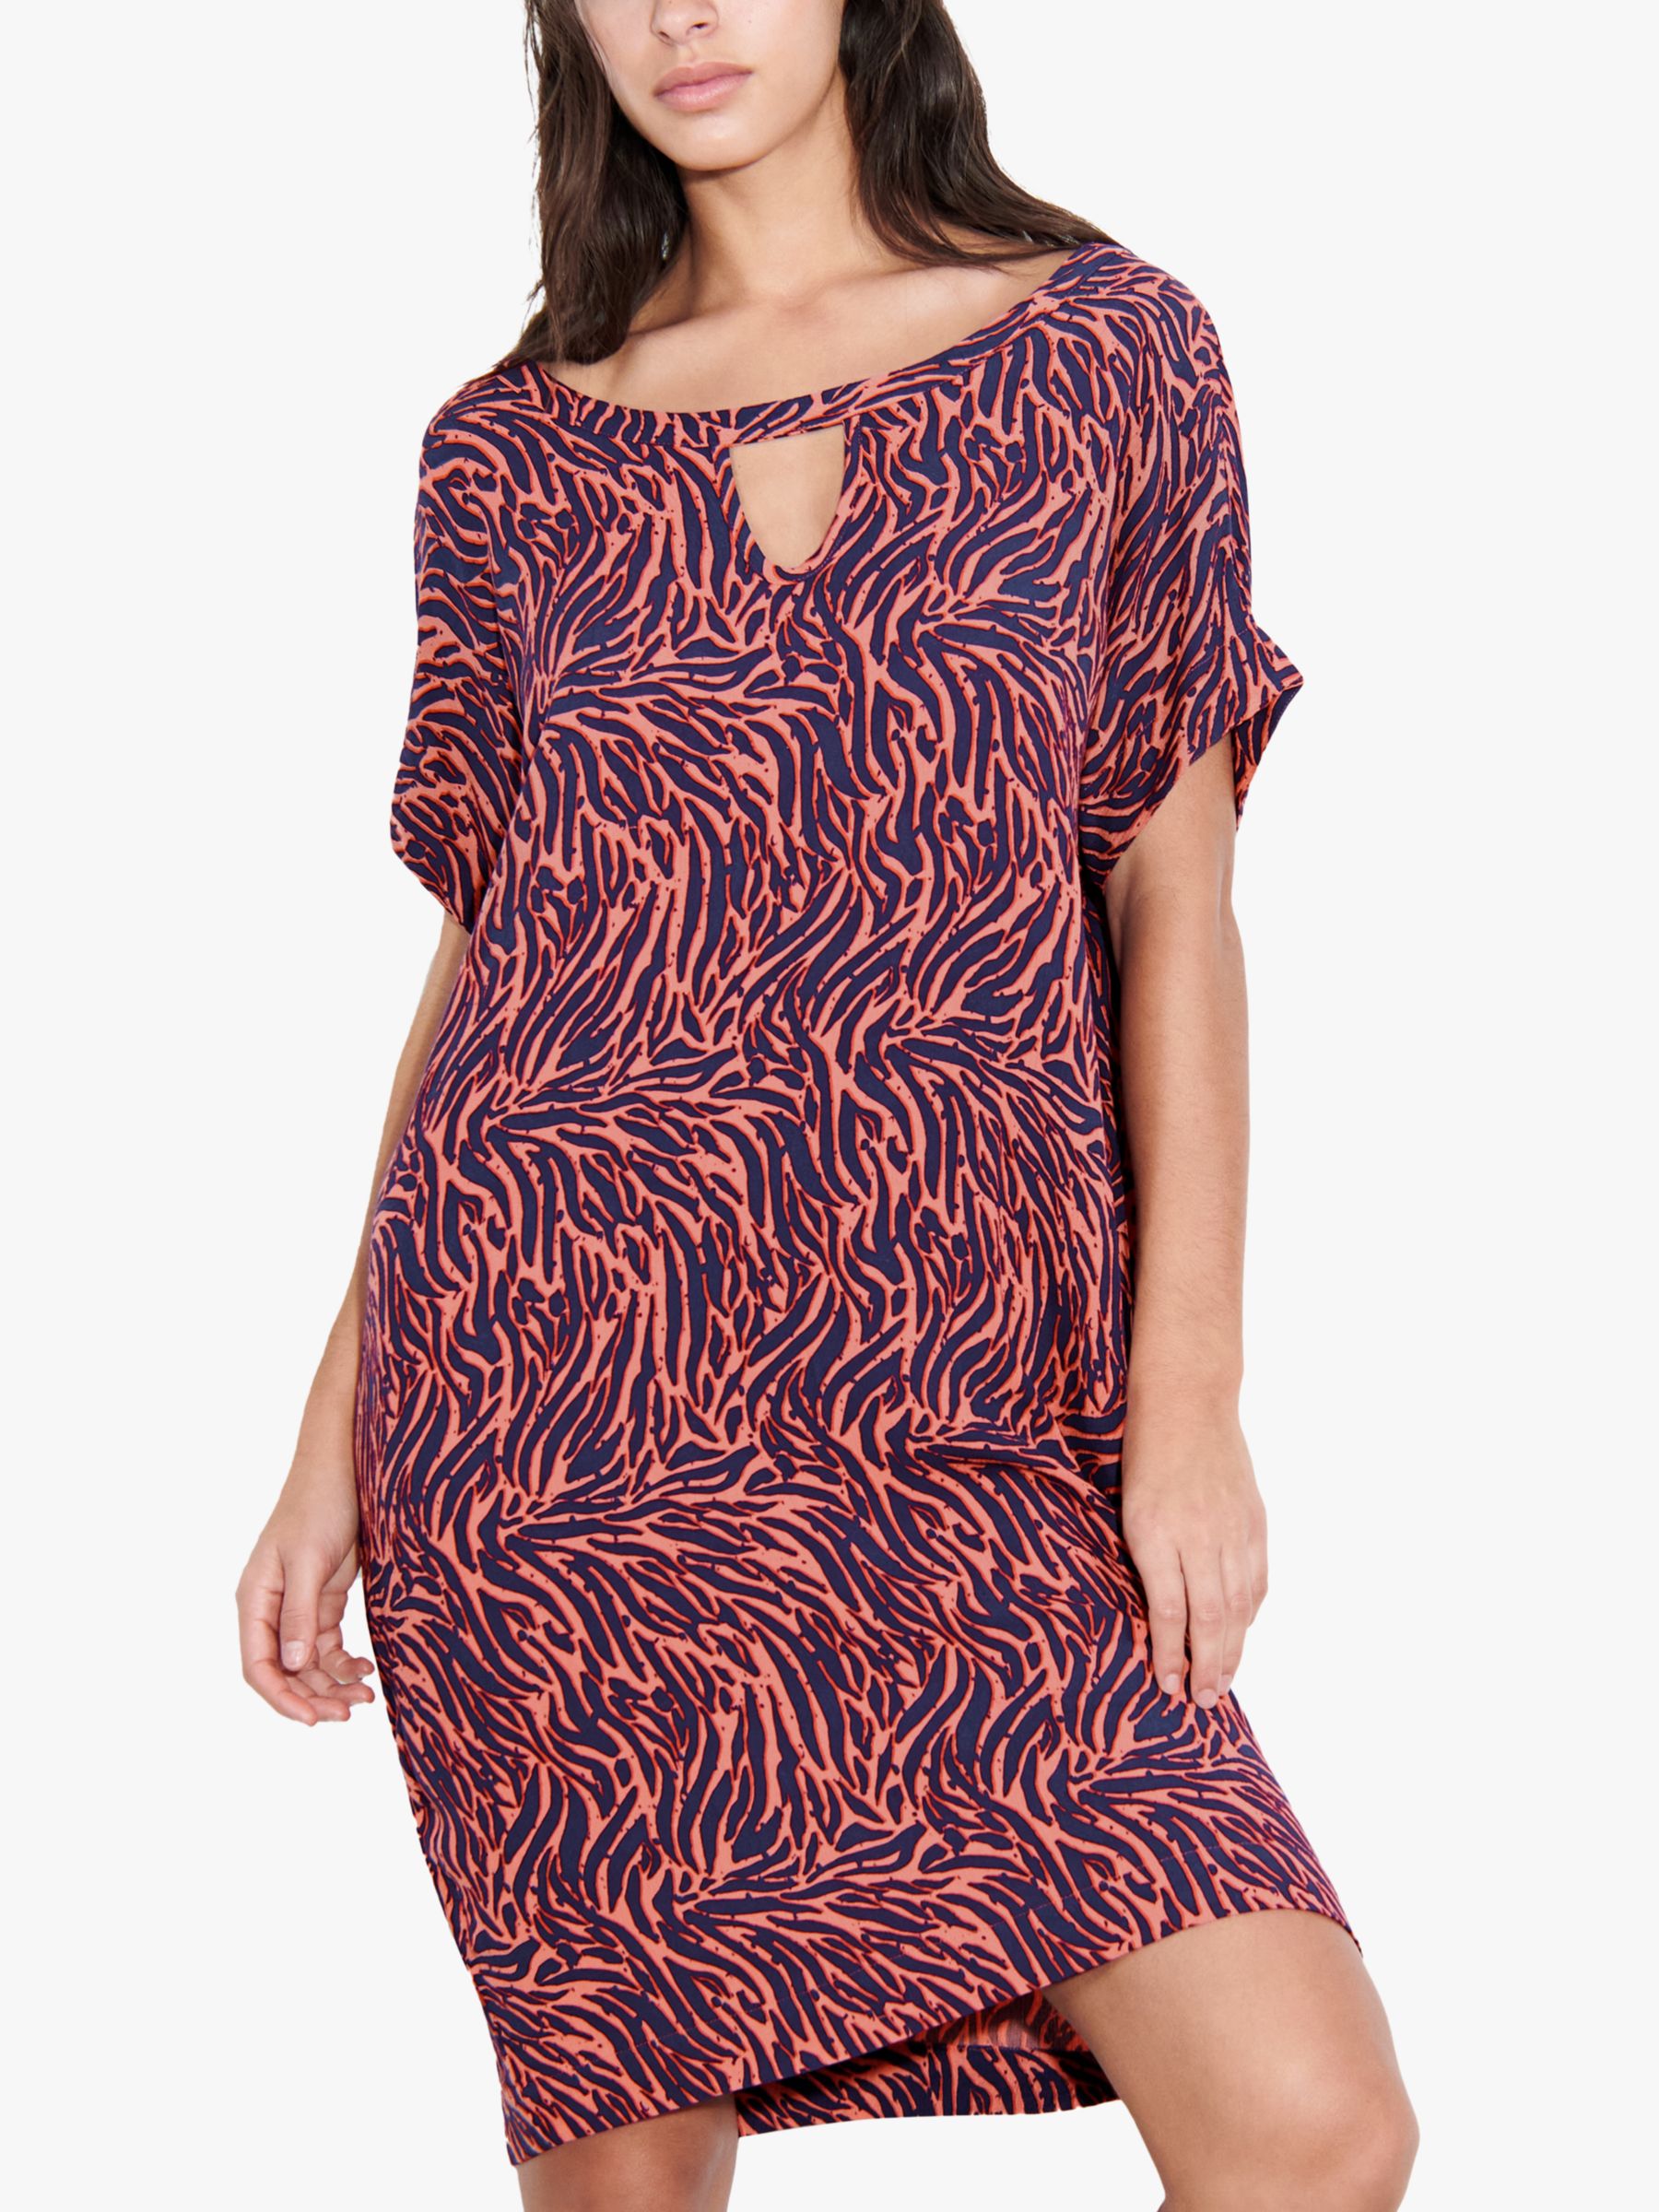 Femilet Pinta Zebra Print Kaftan Dress, Coral/Multi, S-M